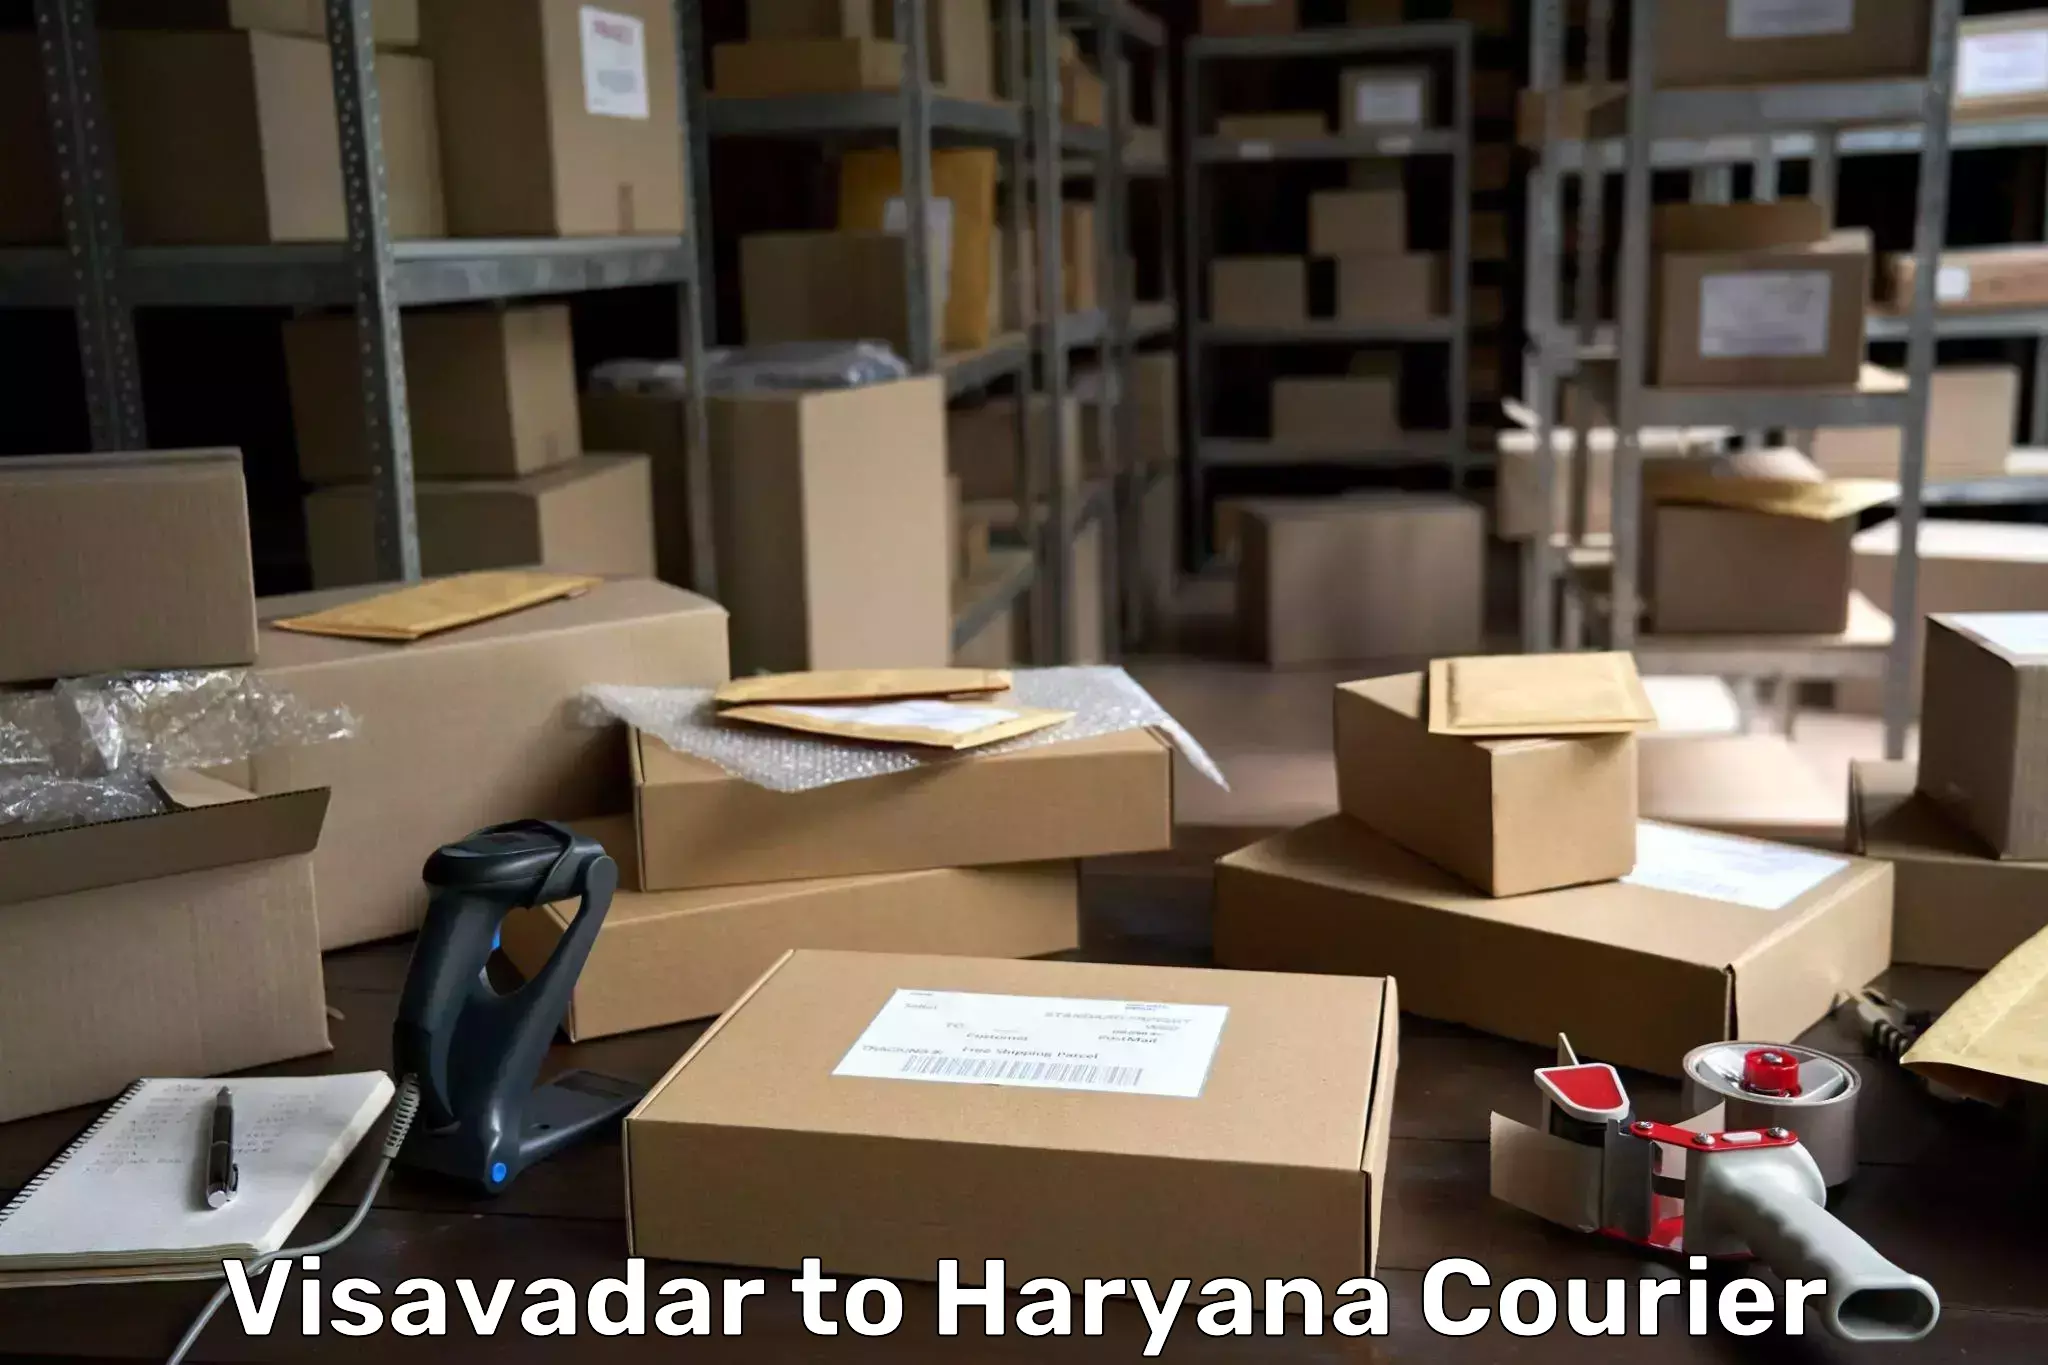 Premium courier solutions Visavadar to Gurgaon